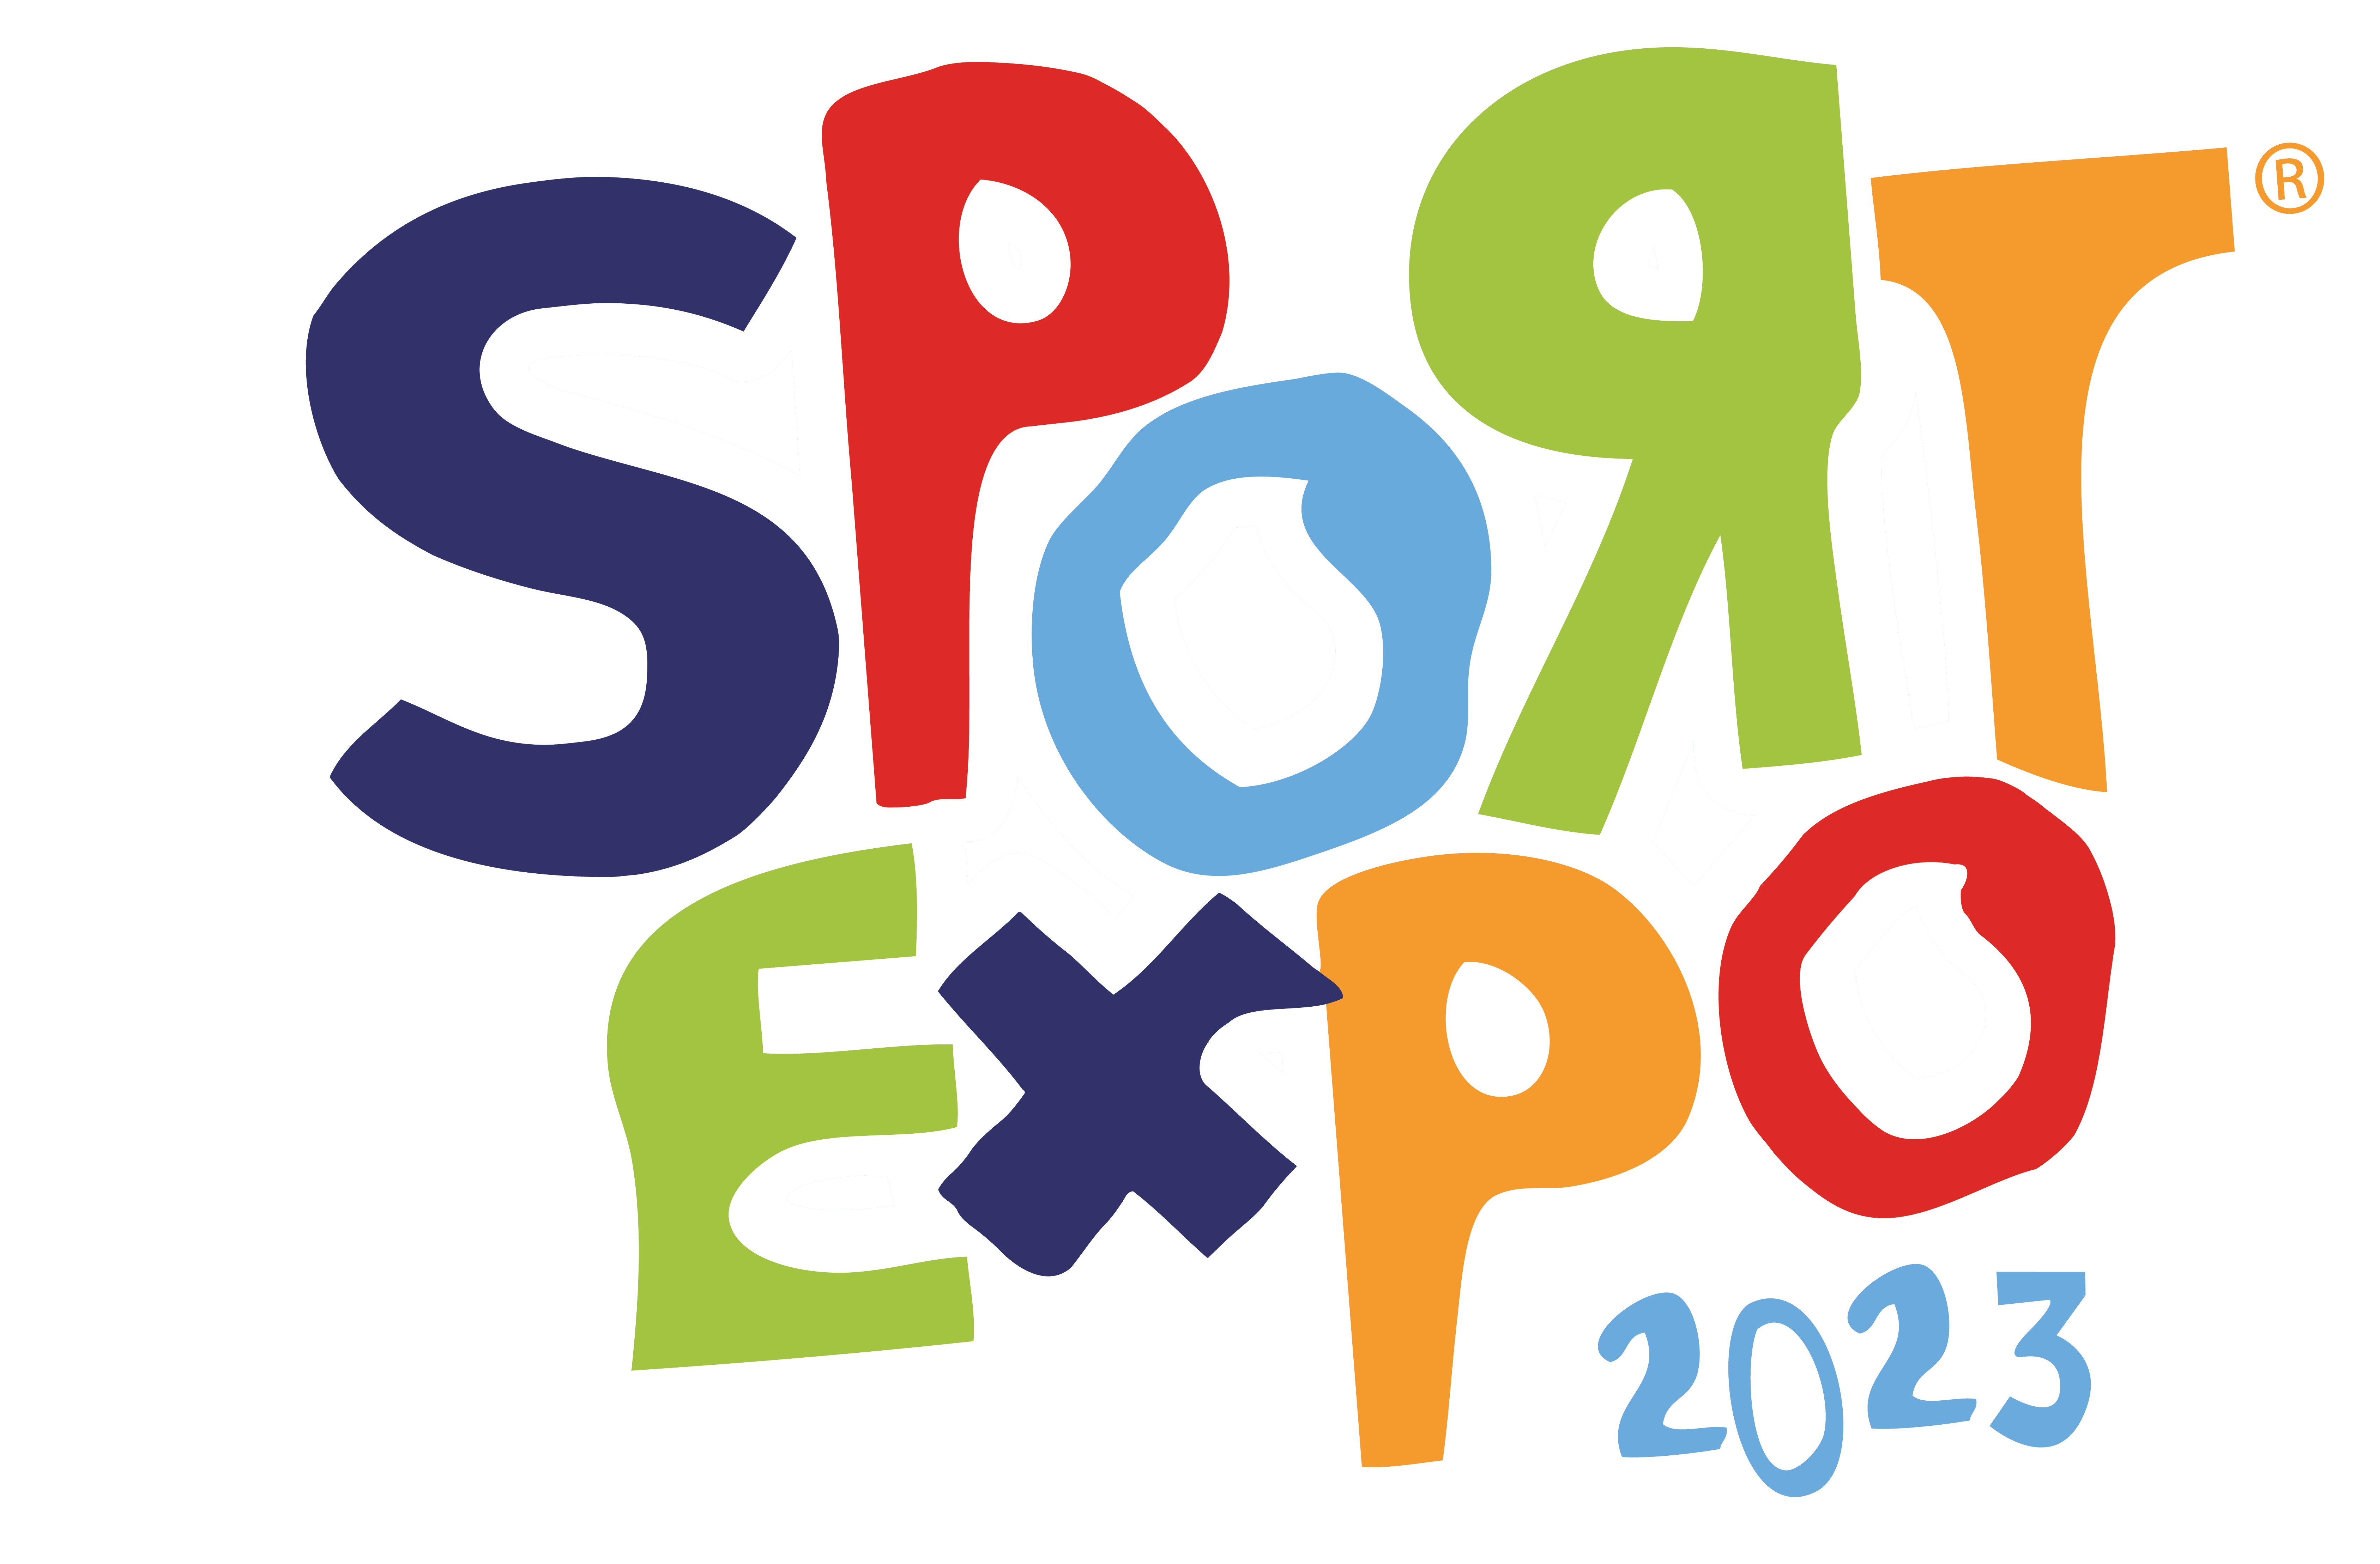 10-11-12 marzo: al via la 17esima edizione di Sport Expo